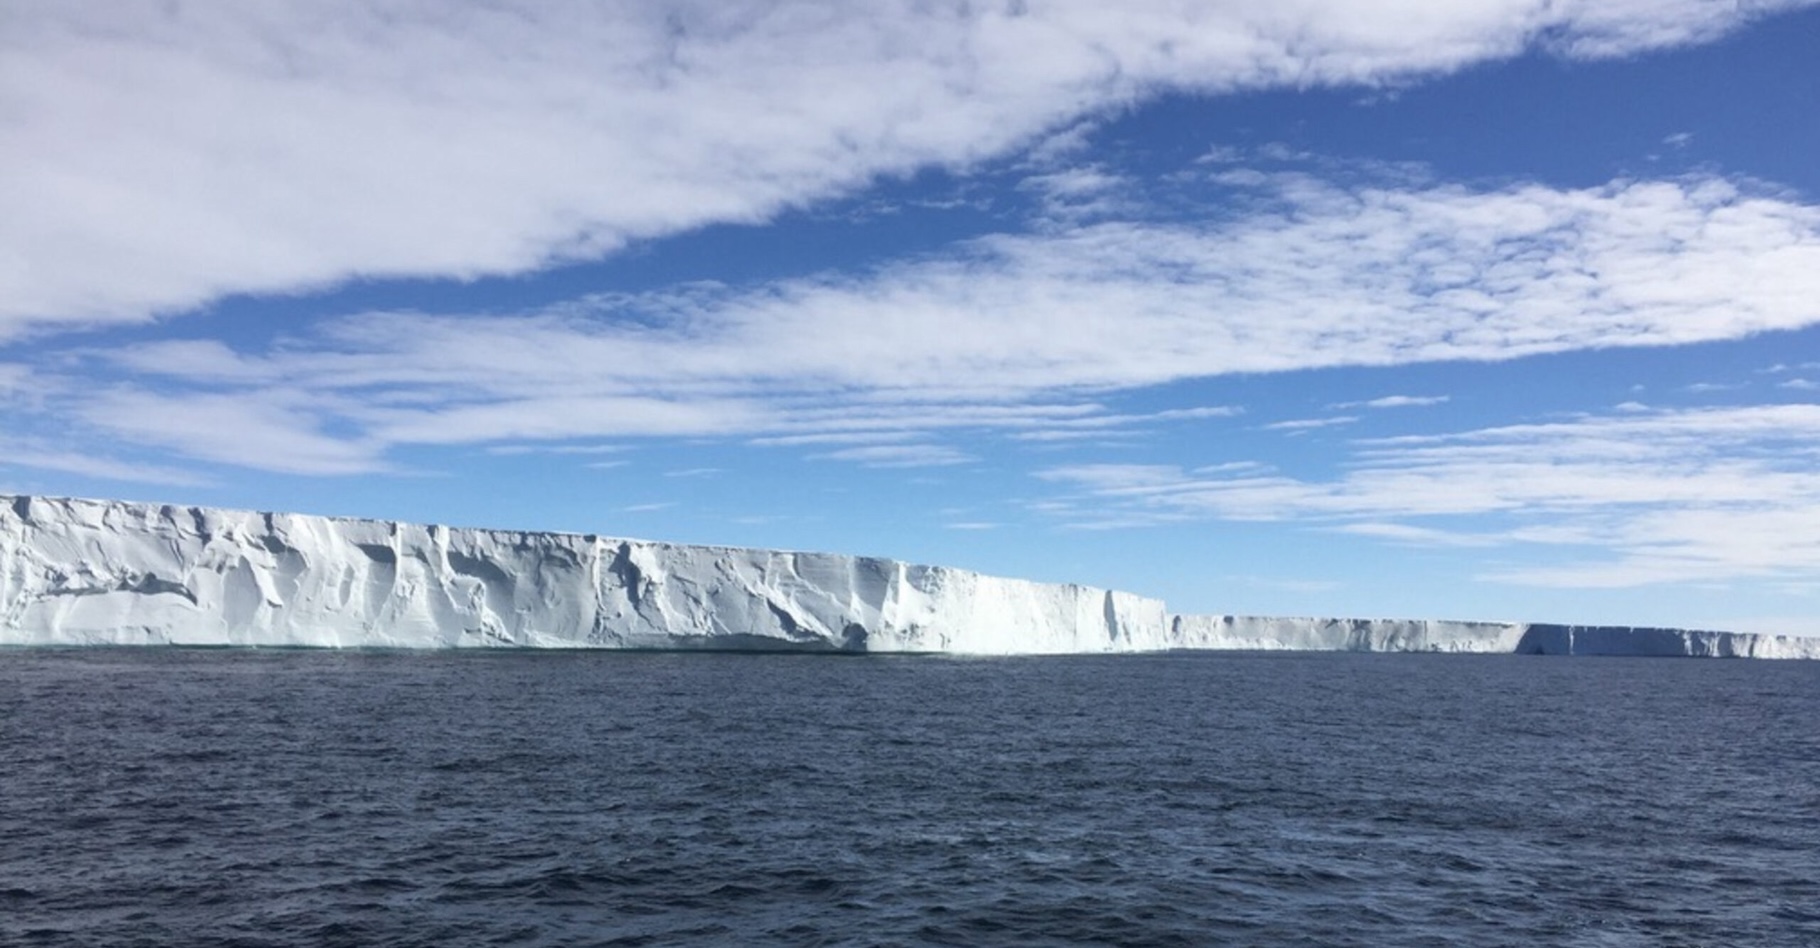 Les courants océaniques et leurs interactions avec les fonds jouent un rôle important dans la fonte des plateformes de glace de l’Antarctique, révèle aujourd’hui une équipe internationale de chercheurs. © Taewook Park, Université d’Hokkaido